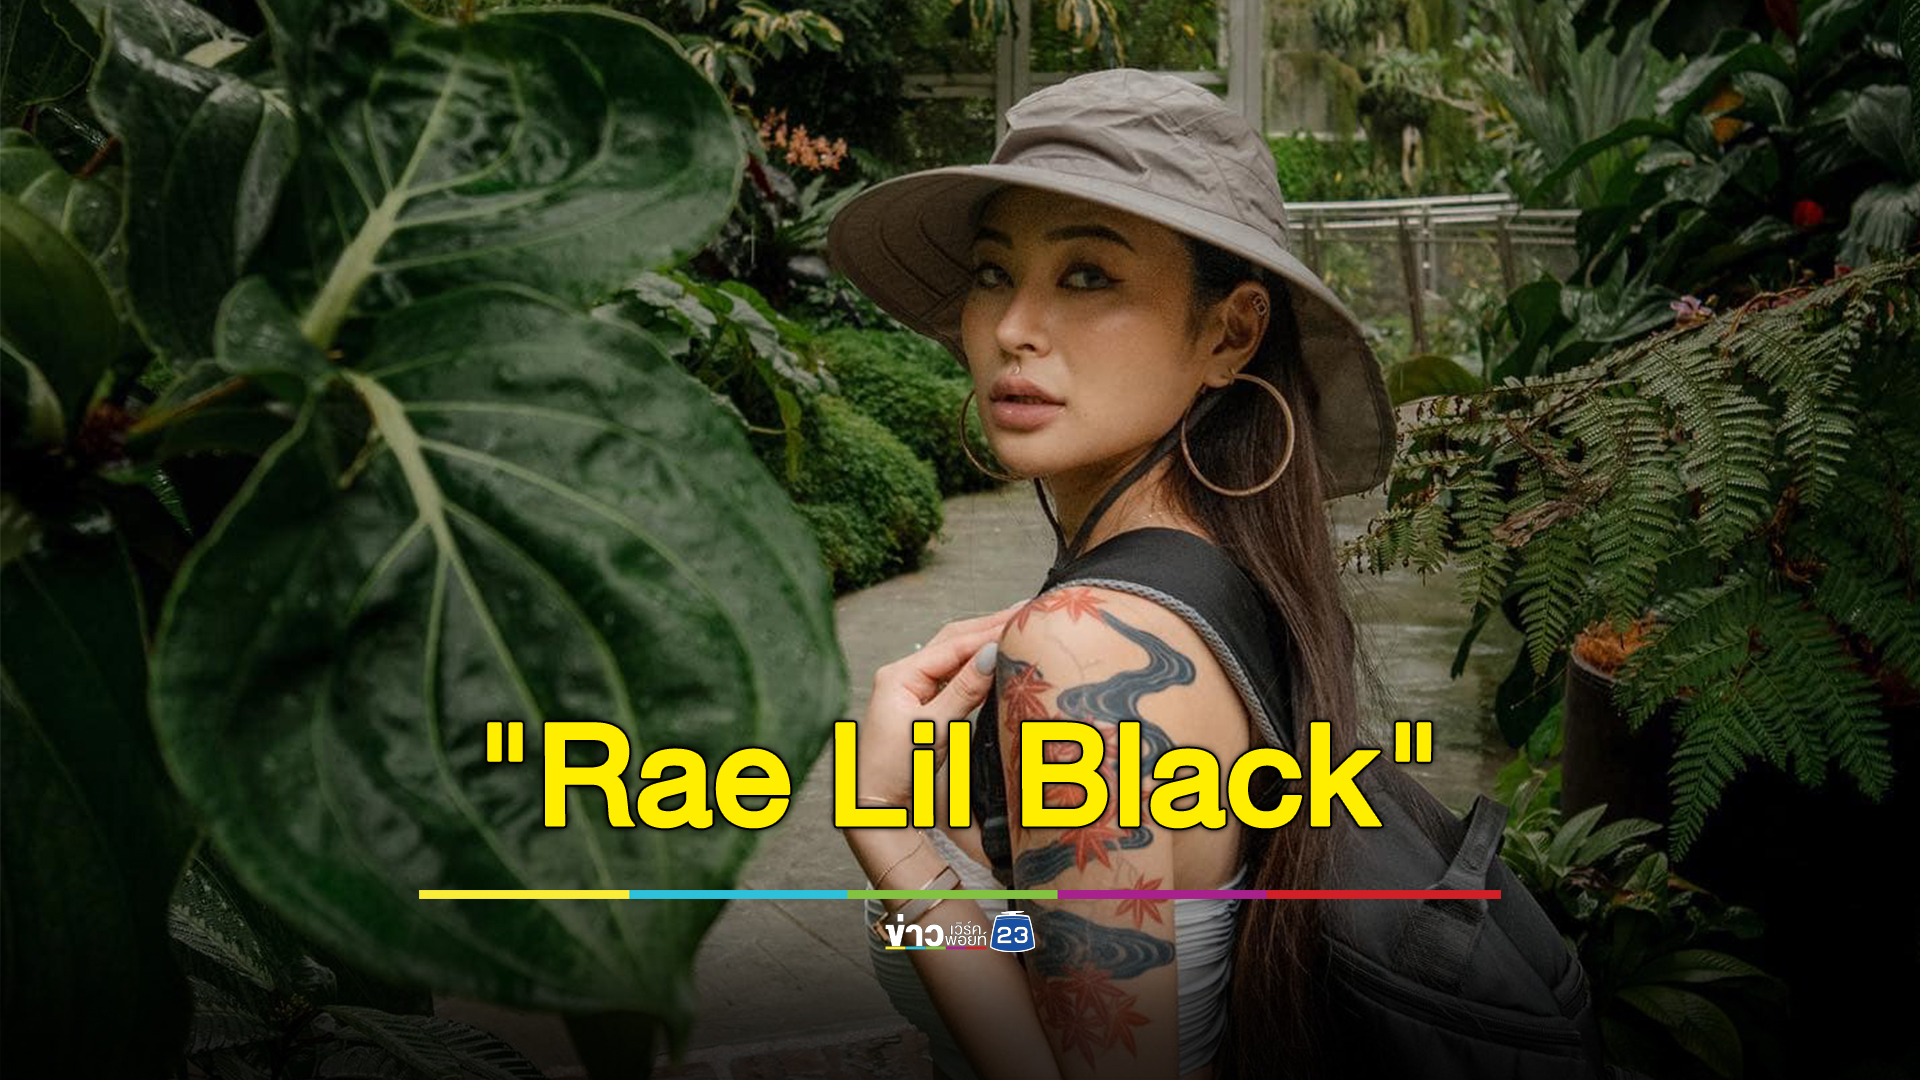 ส่องประวัติ "Rae Lil Black" สาวญี่ปุ่นสุดเซ็กซี่ดาราหนังผู้ใหญ่ ชี้เป้าช่องทางชมผลงาน 